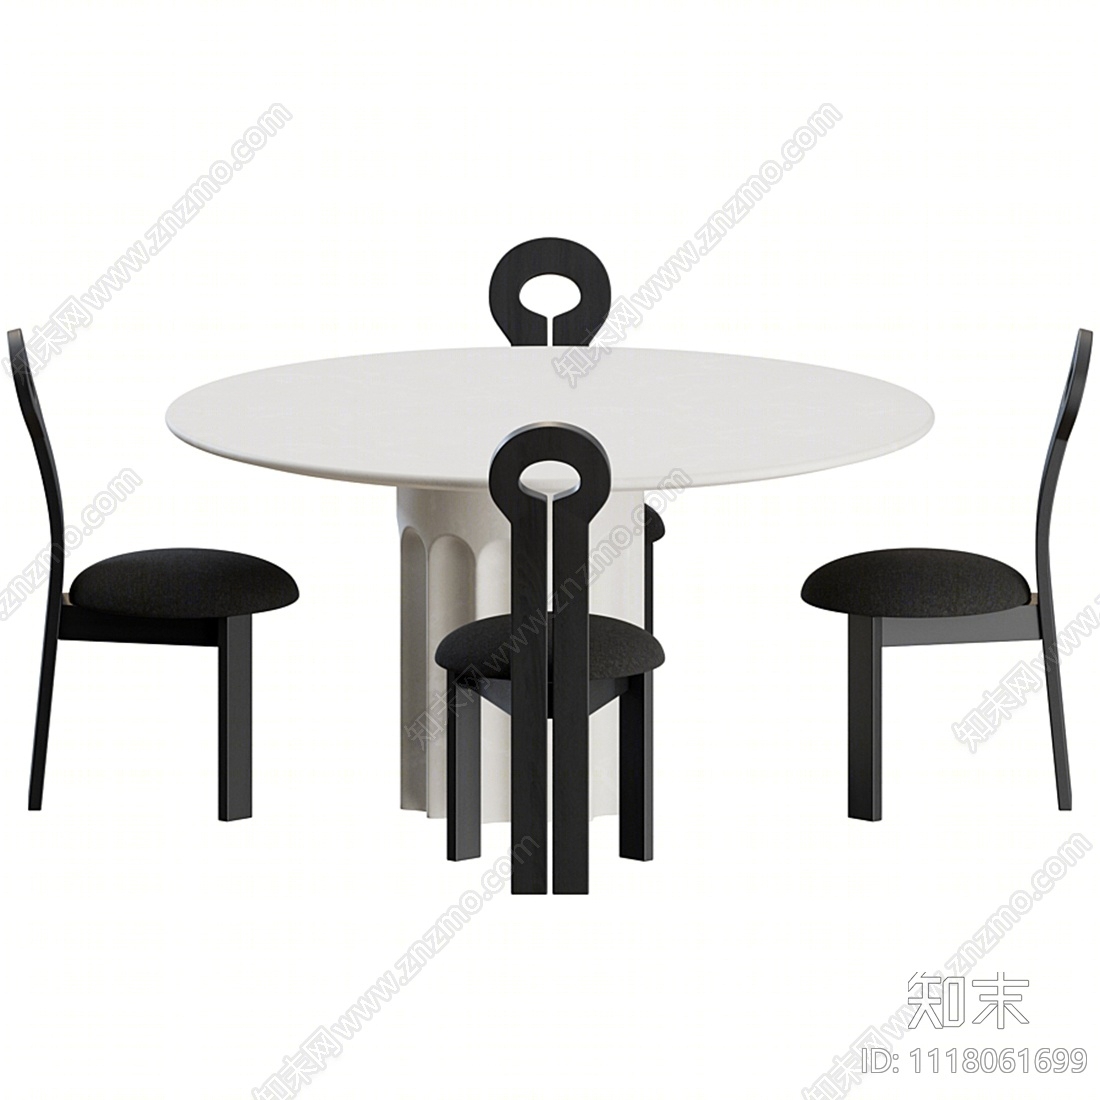 北欧餐桌椅组合3D模型下载【ID:1118061699】